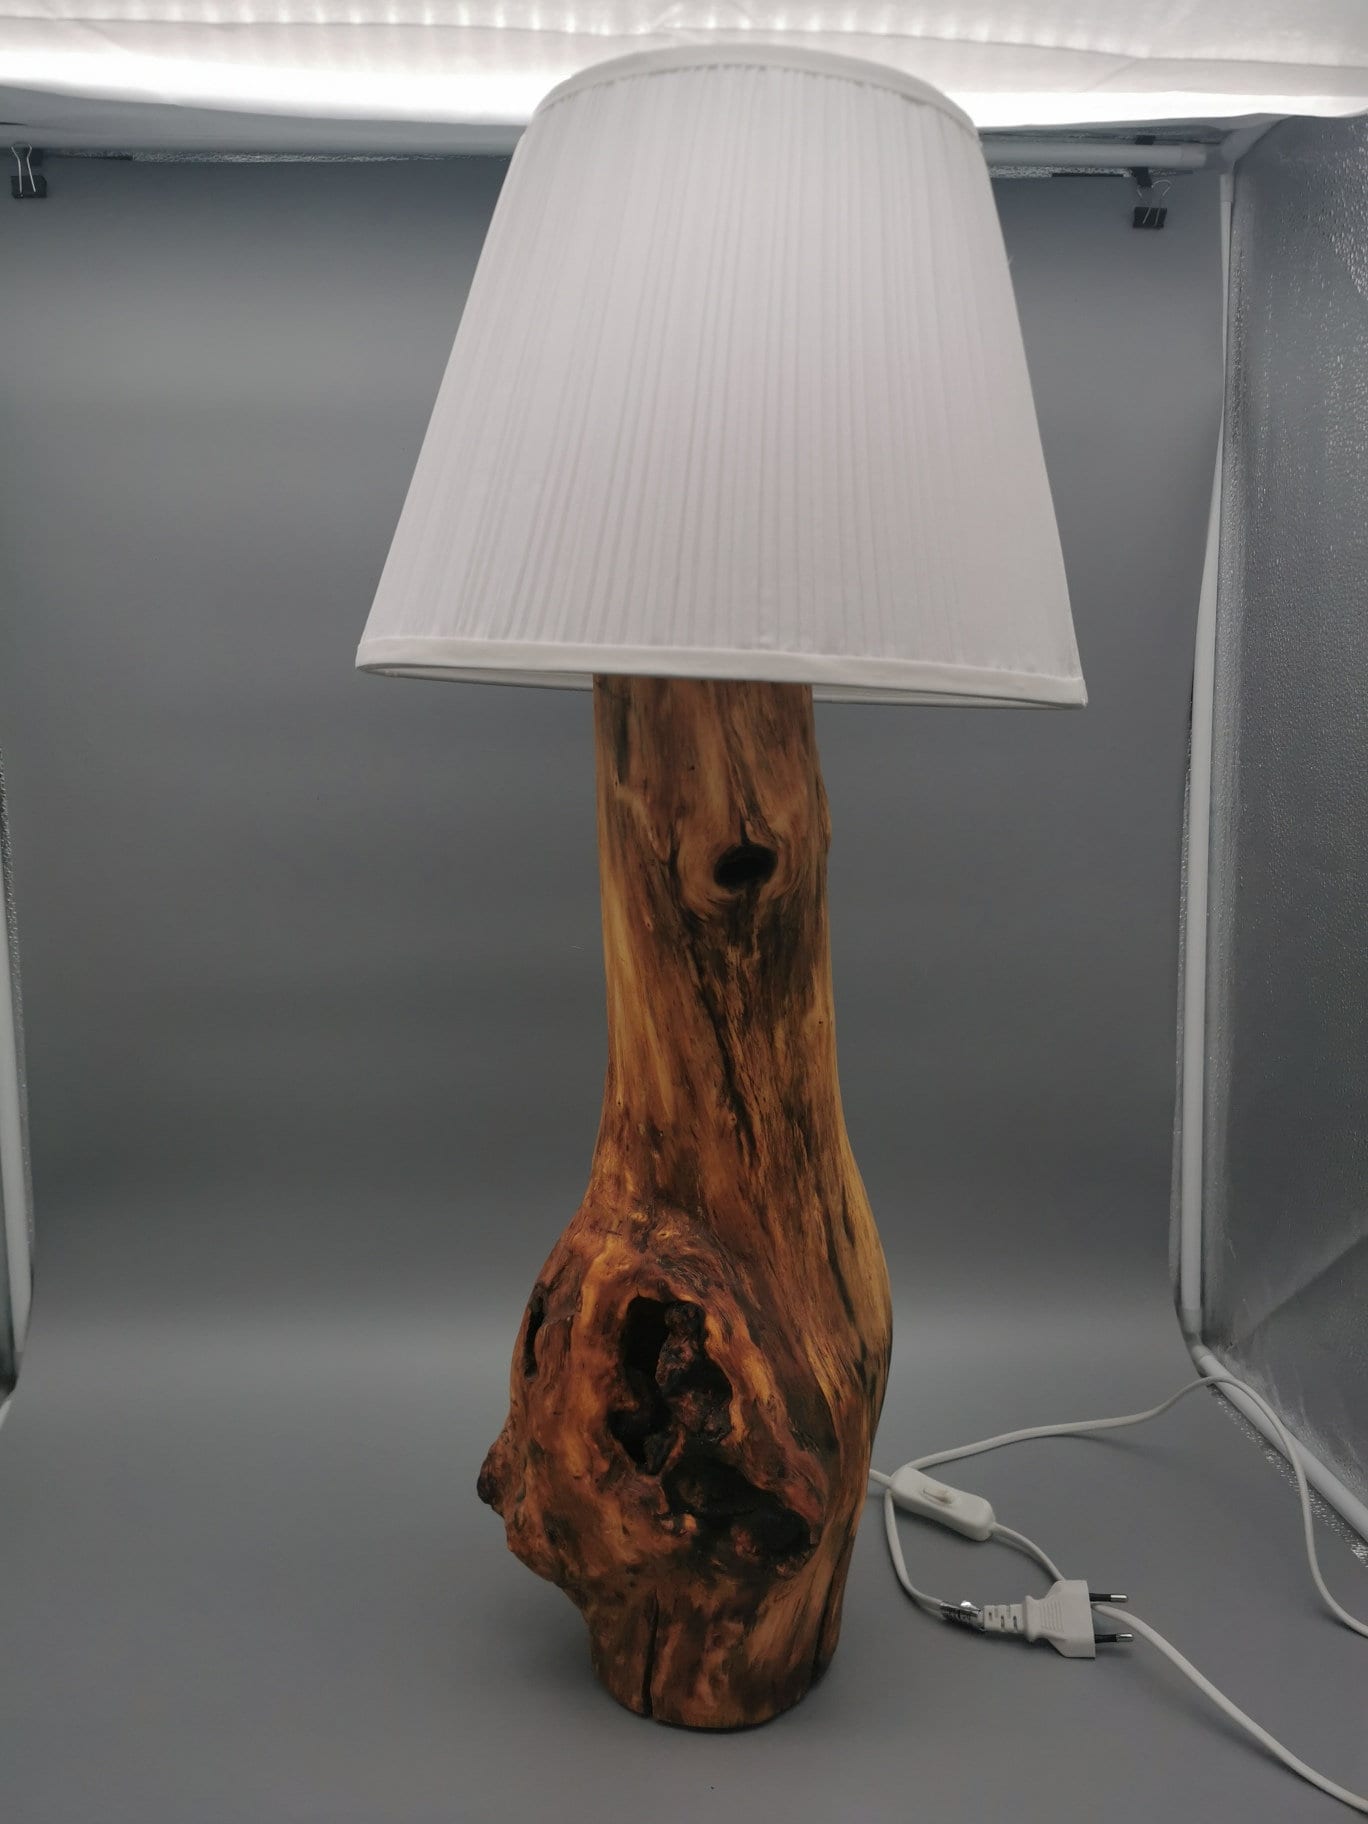 Lampe Holzstamm in Innenraum-Lampen online kaufen